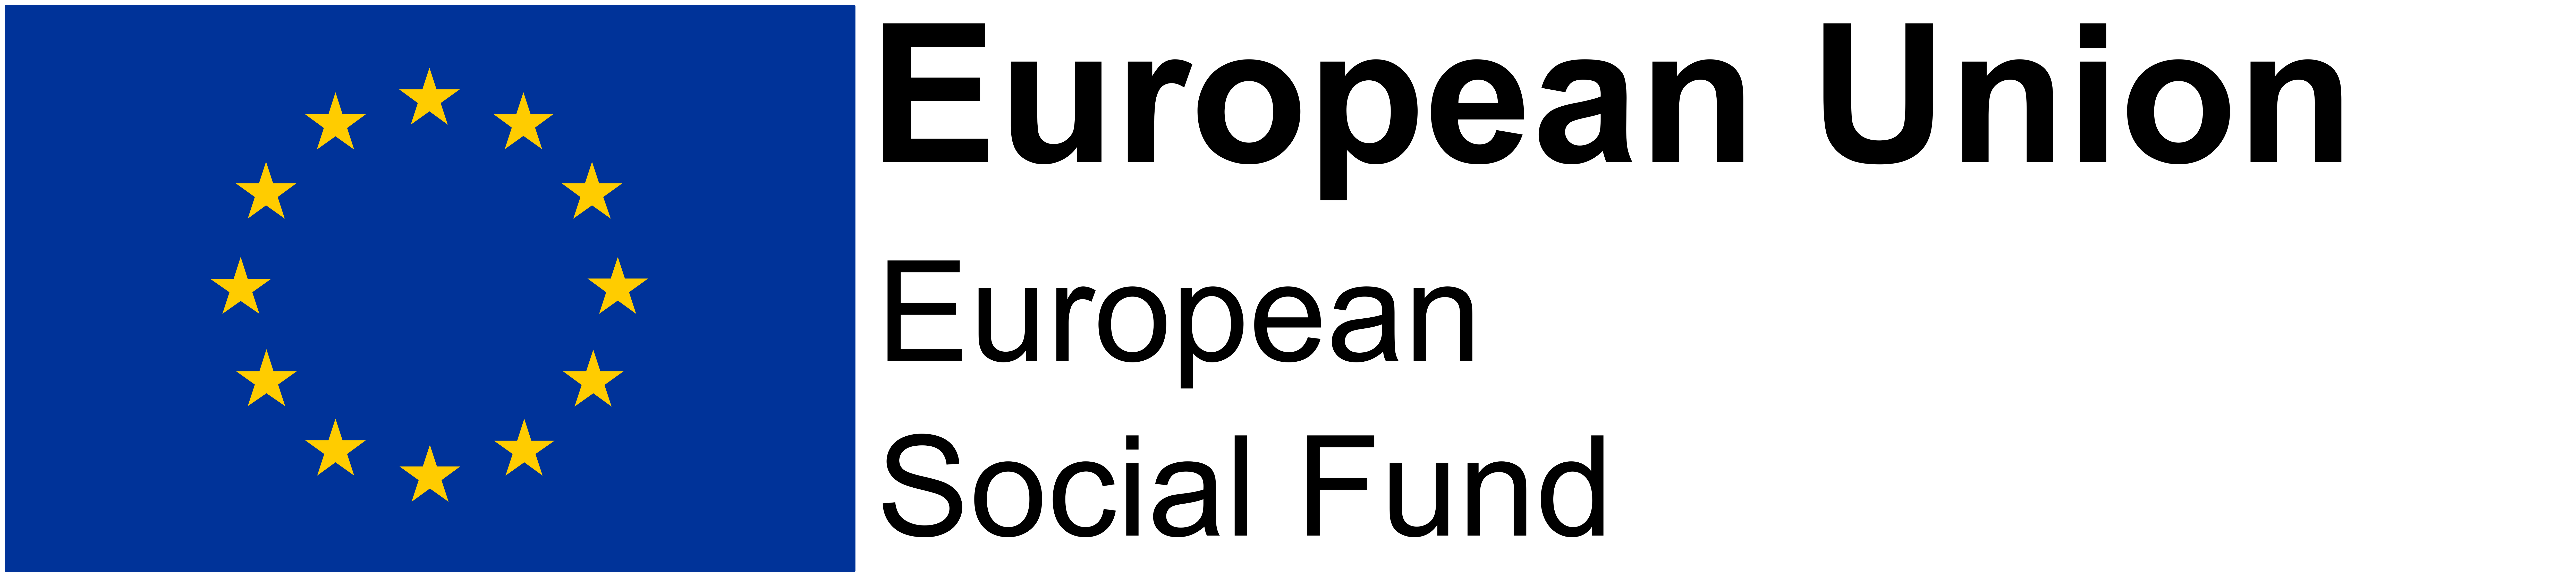 EU Reginonal Development Fund Logo